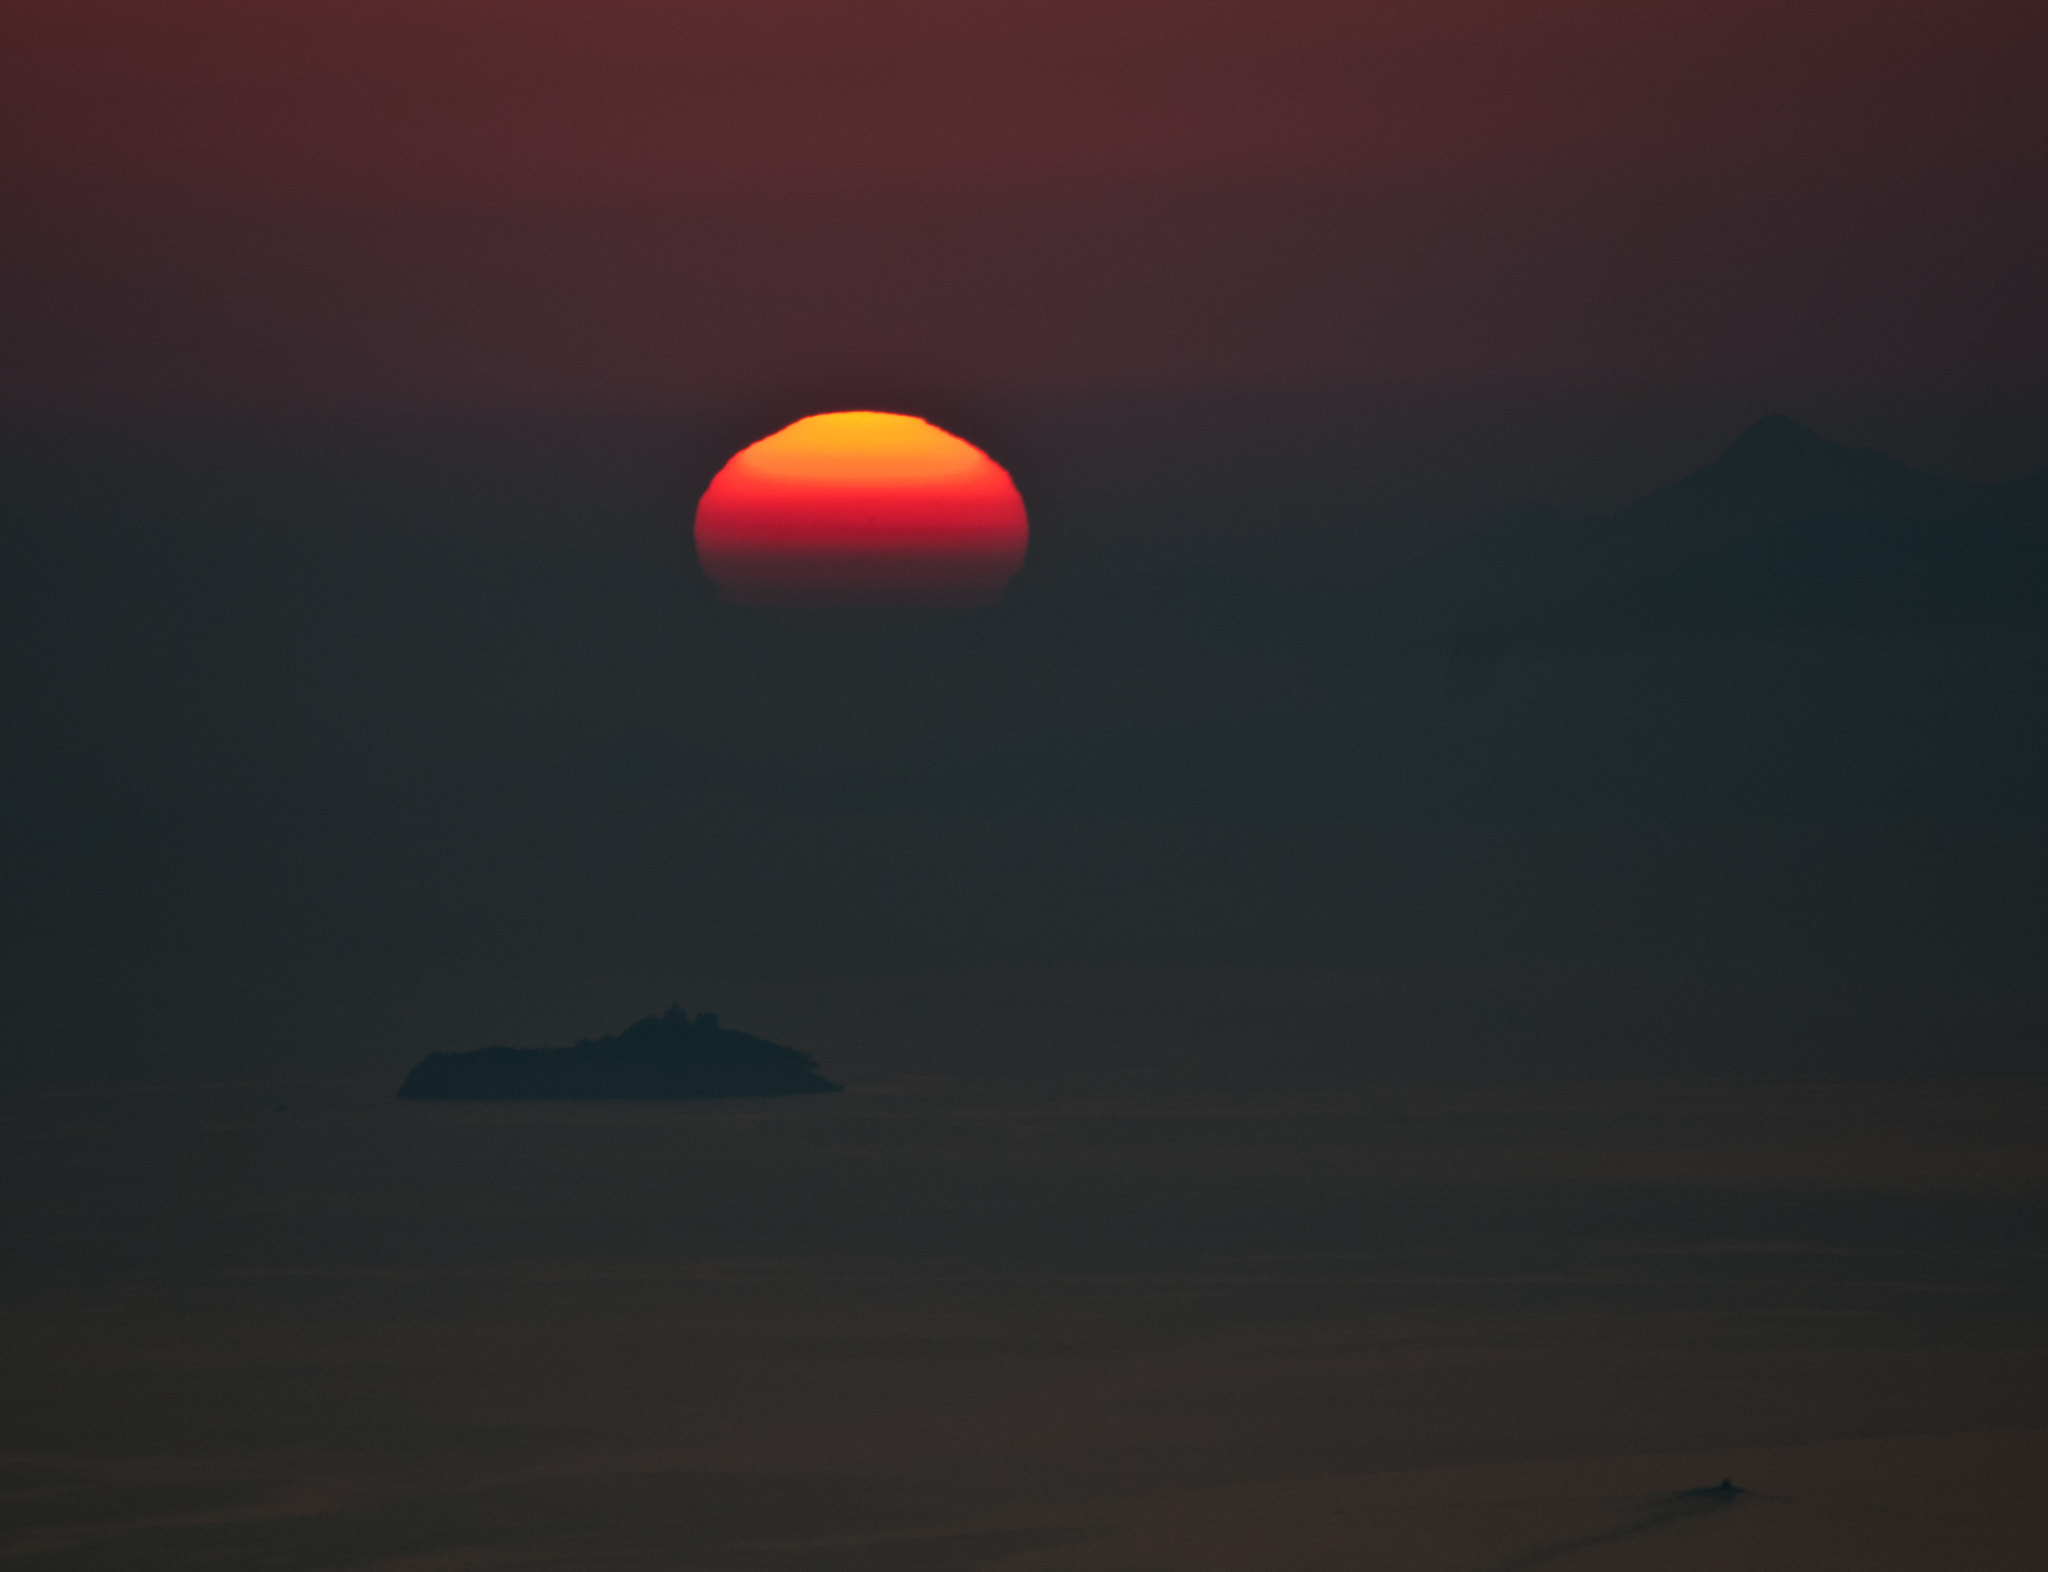 Nikon D300 sample photo. Sonnenuntergang in der nähe von dubrovnik photography